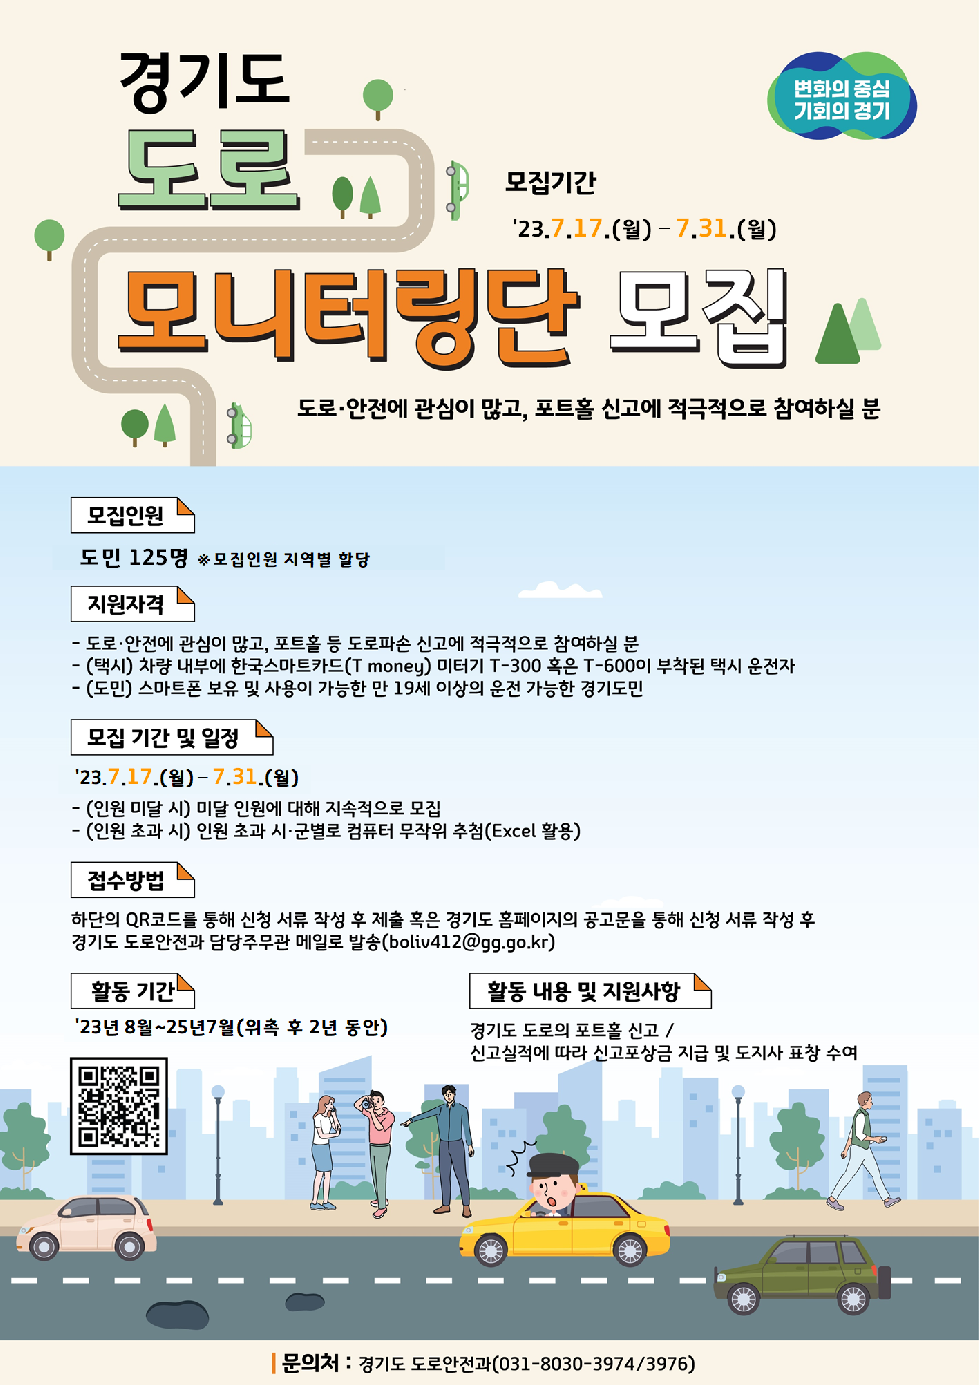 경기도, 31일까지 도로 모니터링단 참여 도민 모집